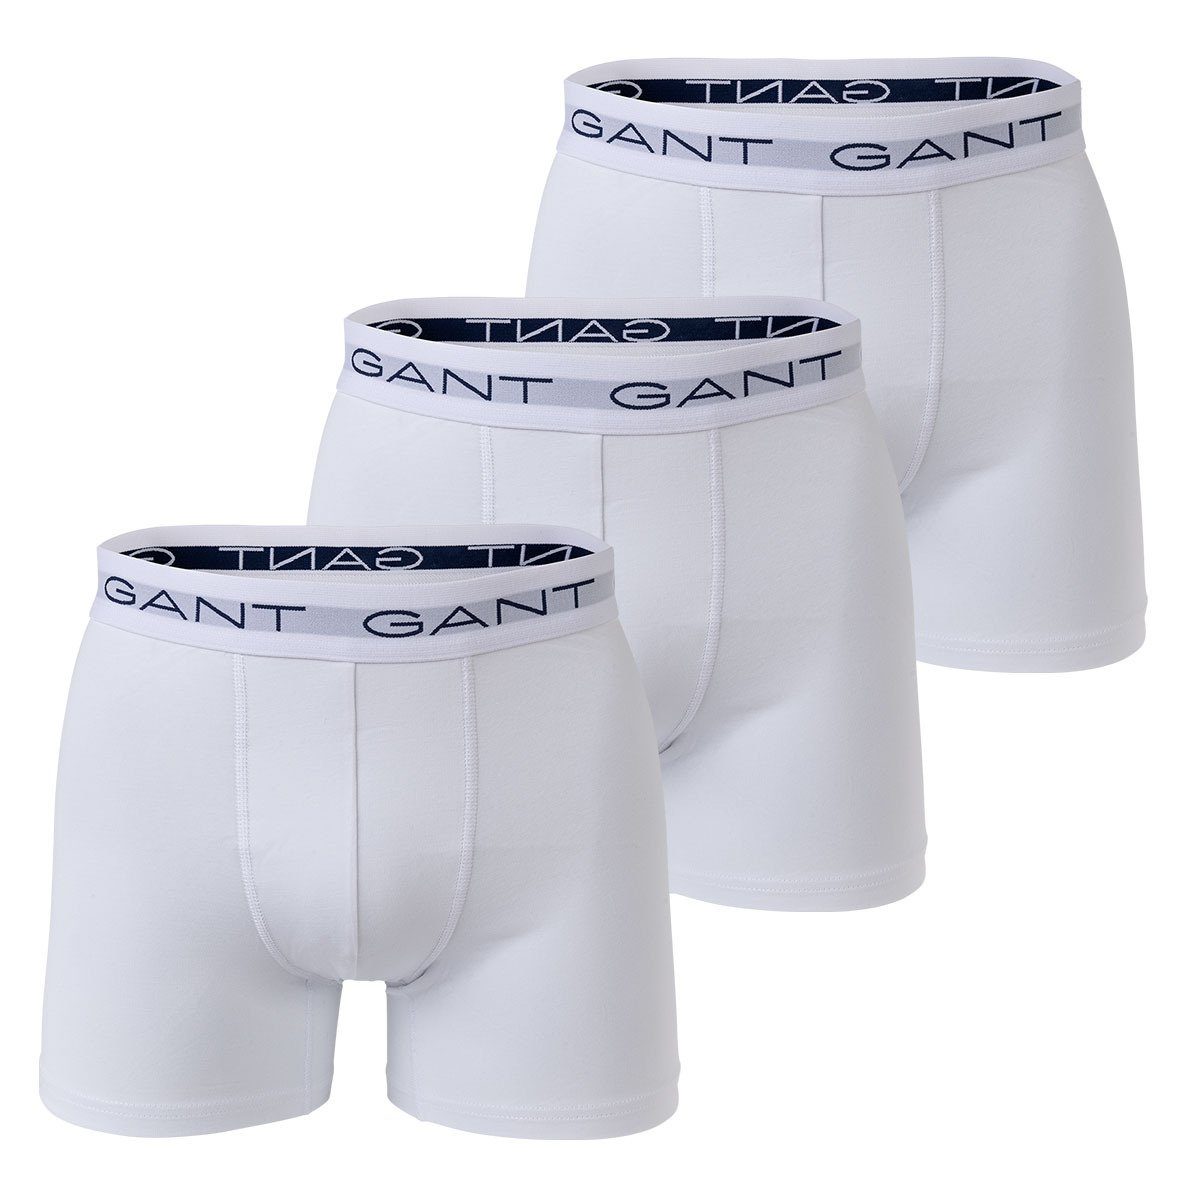 Gant Boxer Herren Boxer Shorts, 3er Pack - Boxer Briefs Weiß